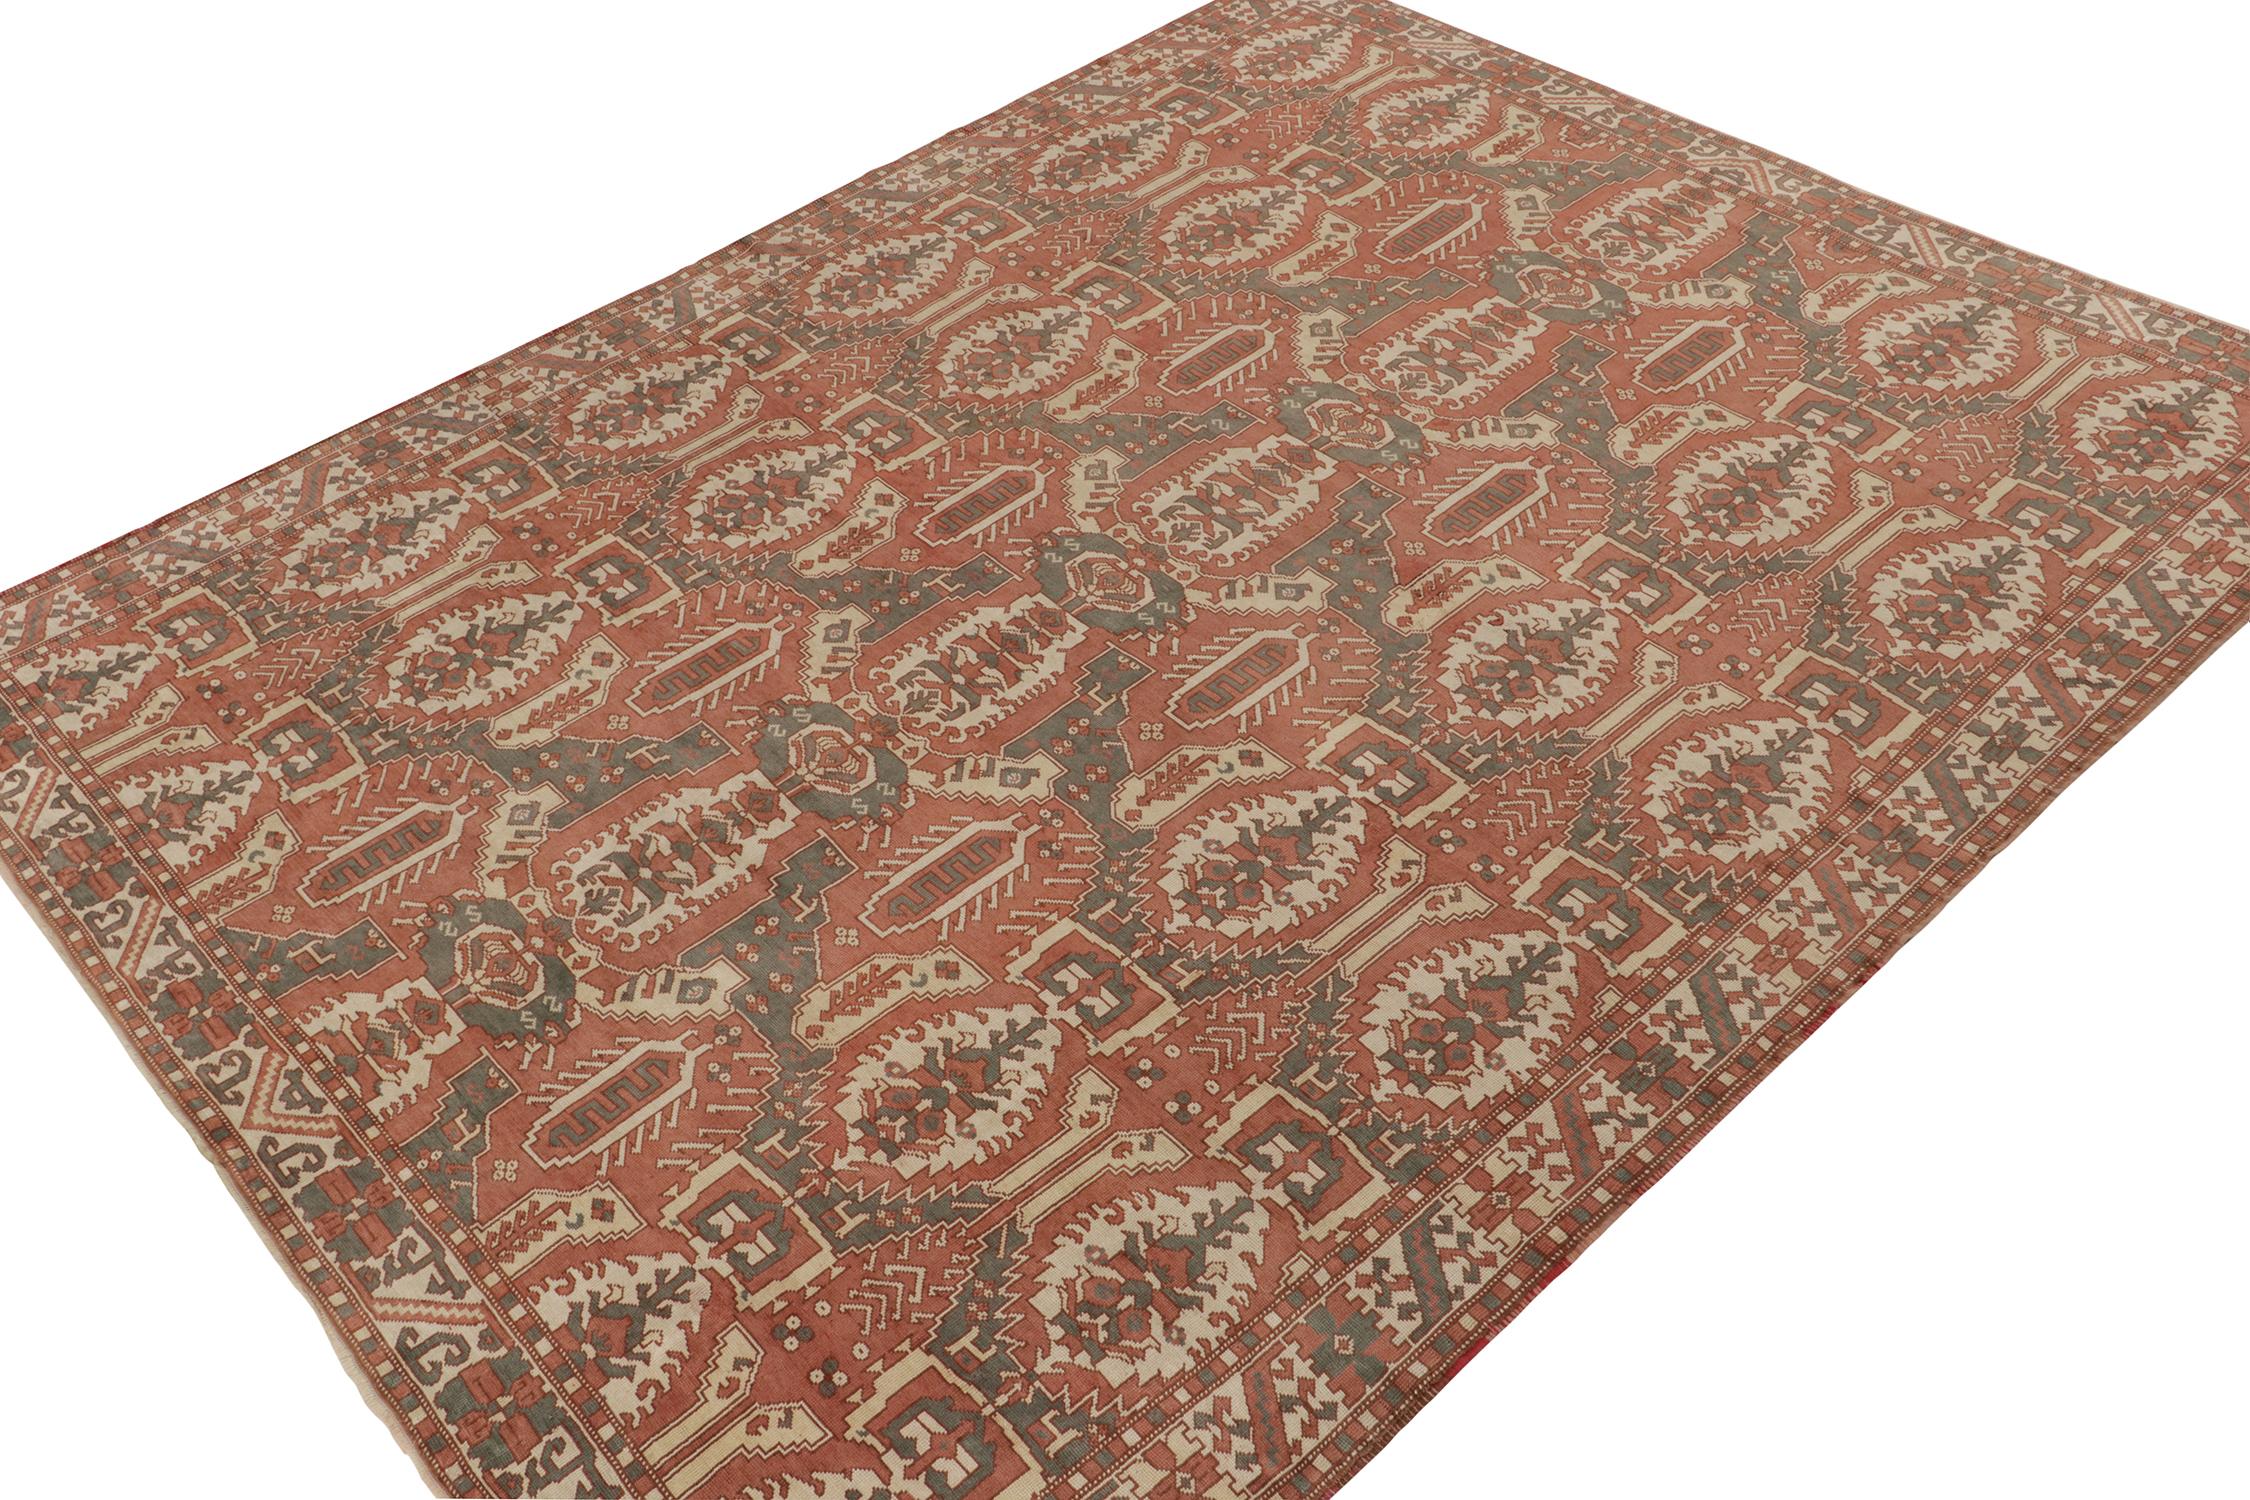 Ein 11x13 großer Teppich, der von klassischen Designs inspiriert ist - aus der Modern Classics Collection'S von Rug & Kilim. Der handgeknüpfte Wollstoff vereint warme Farbtöne in geometrisch-floralen Mustern mit Tribal-Sensibilität.

Weiter zum